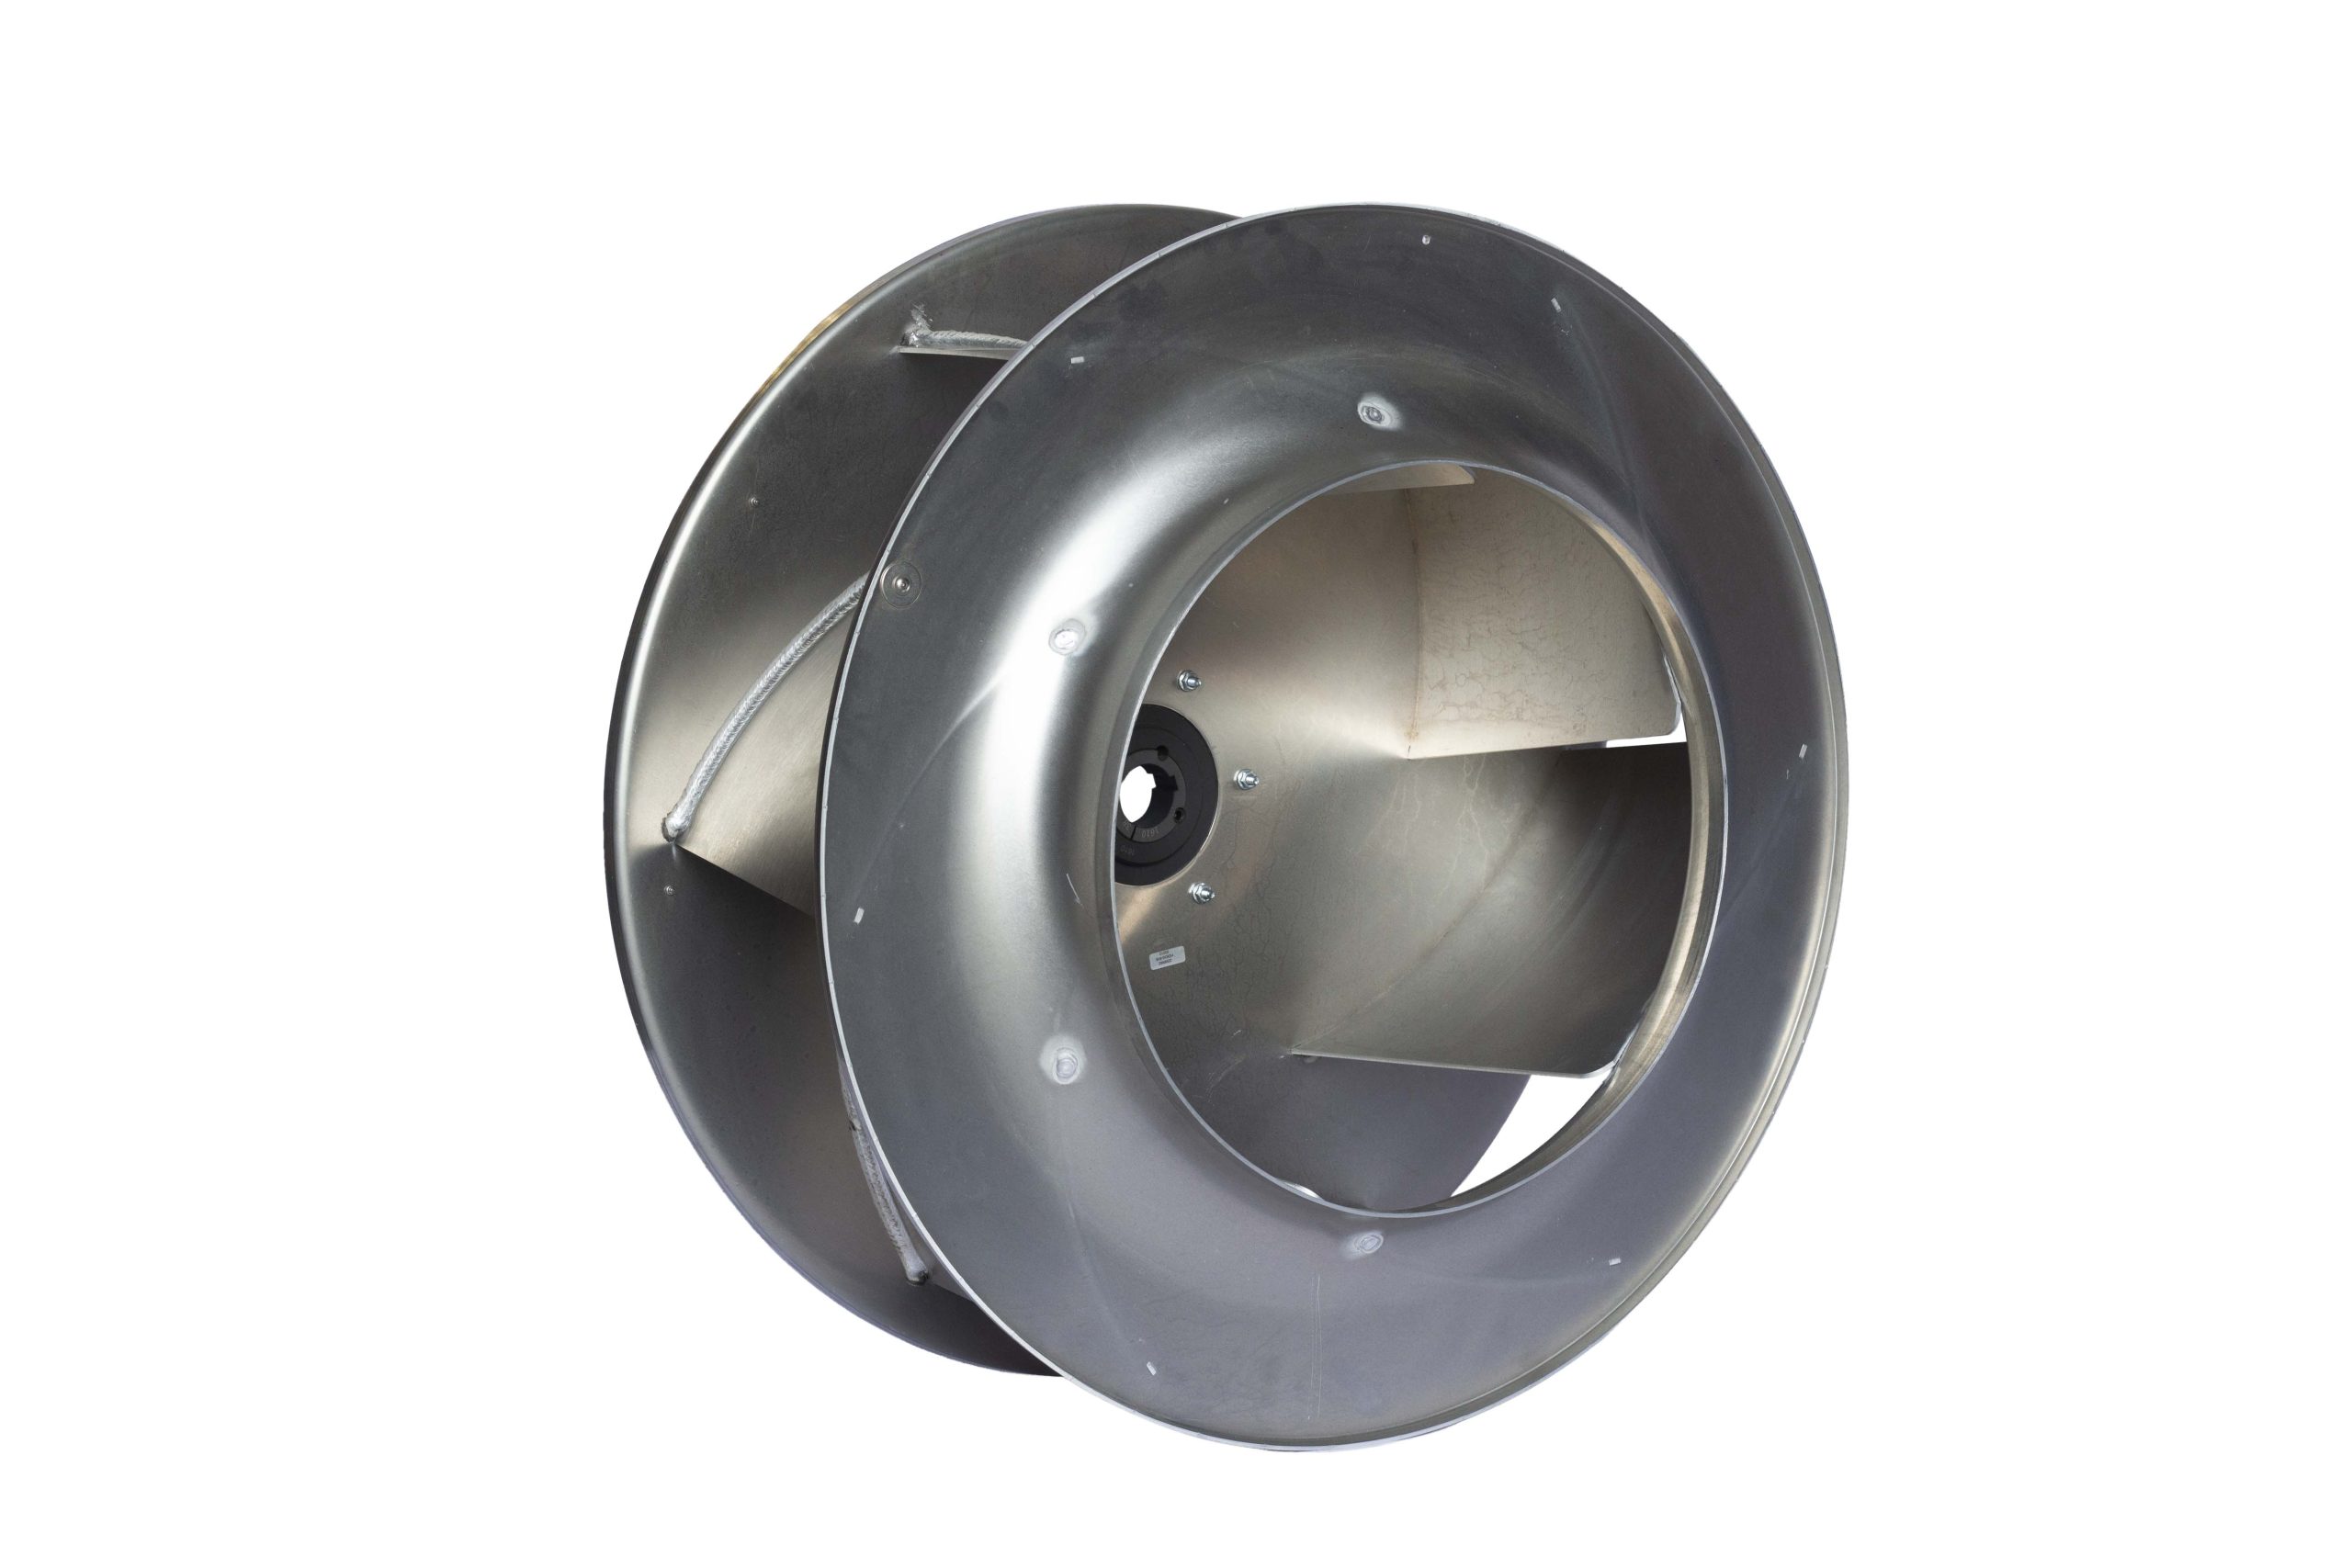 Acoustic Axial Flow Fan Box AAF-630/1